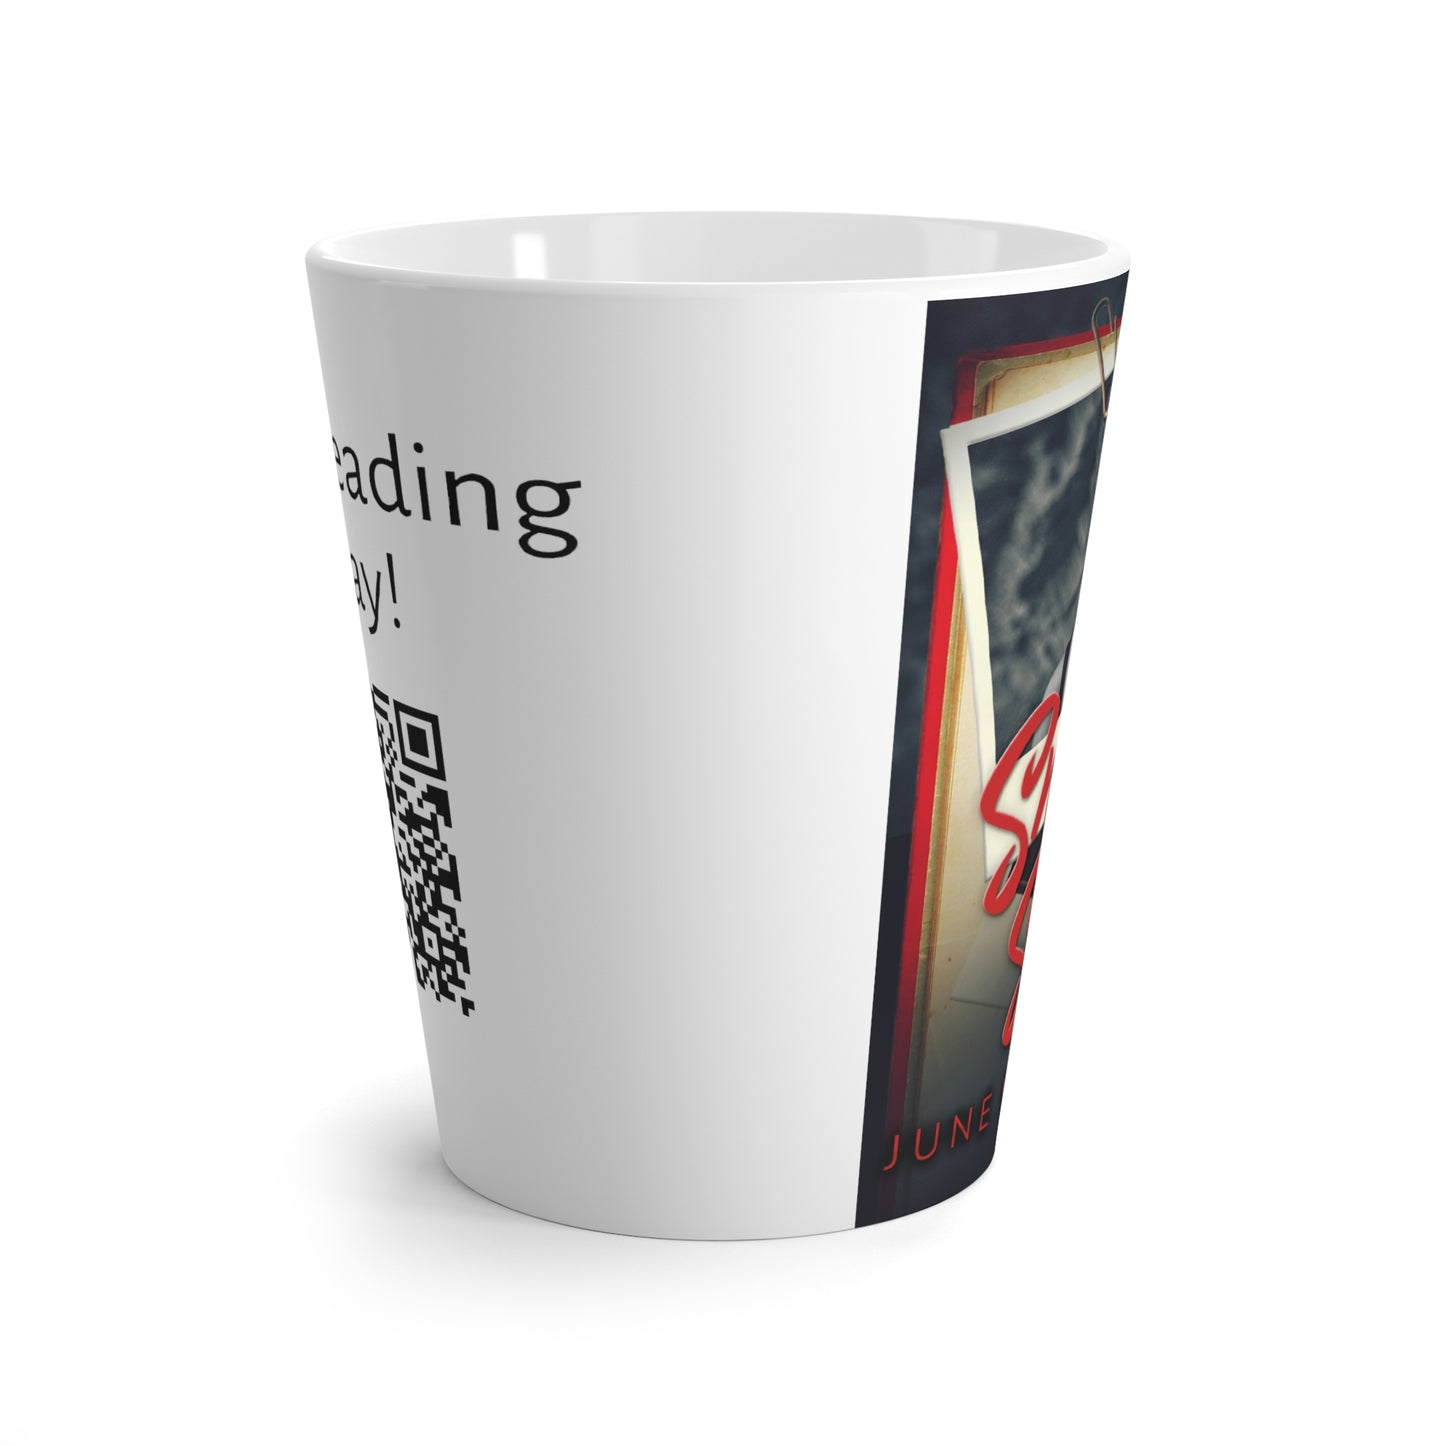 Snap Shots - Latte Mug